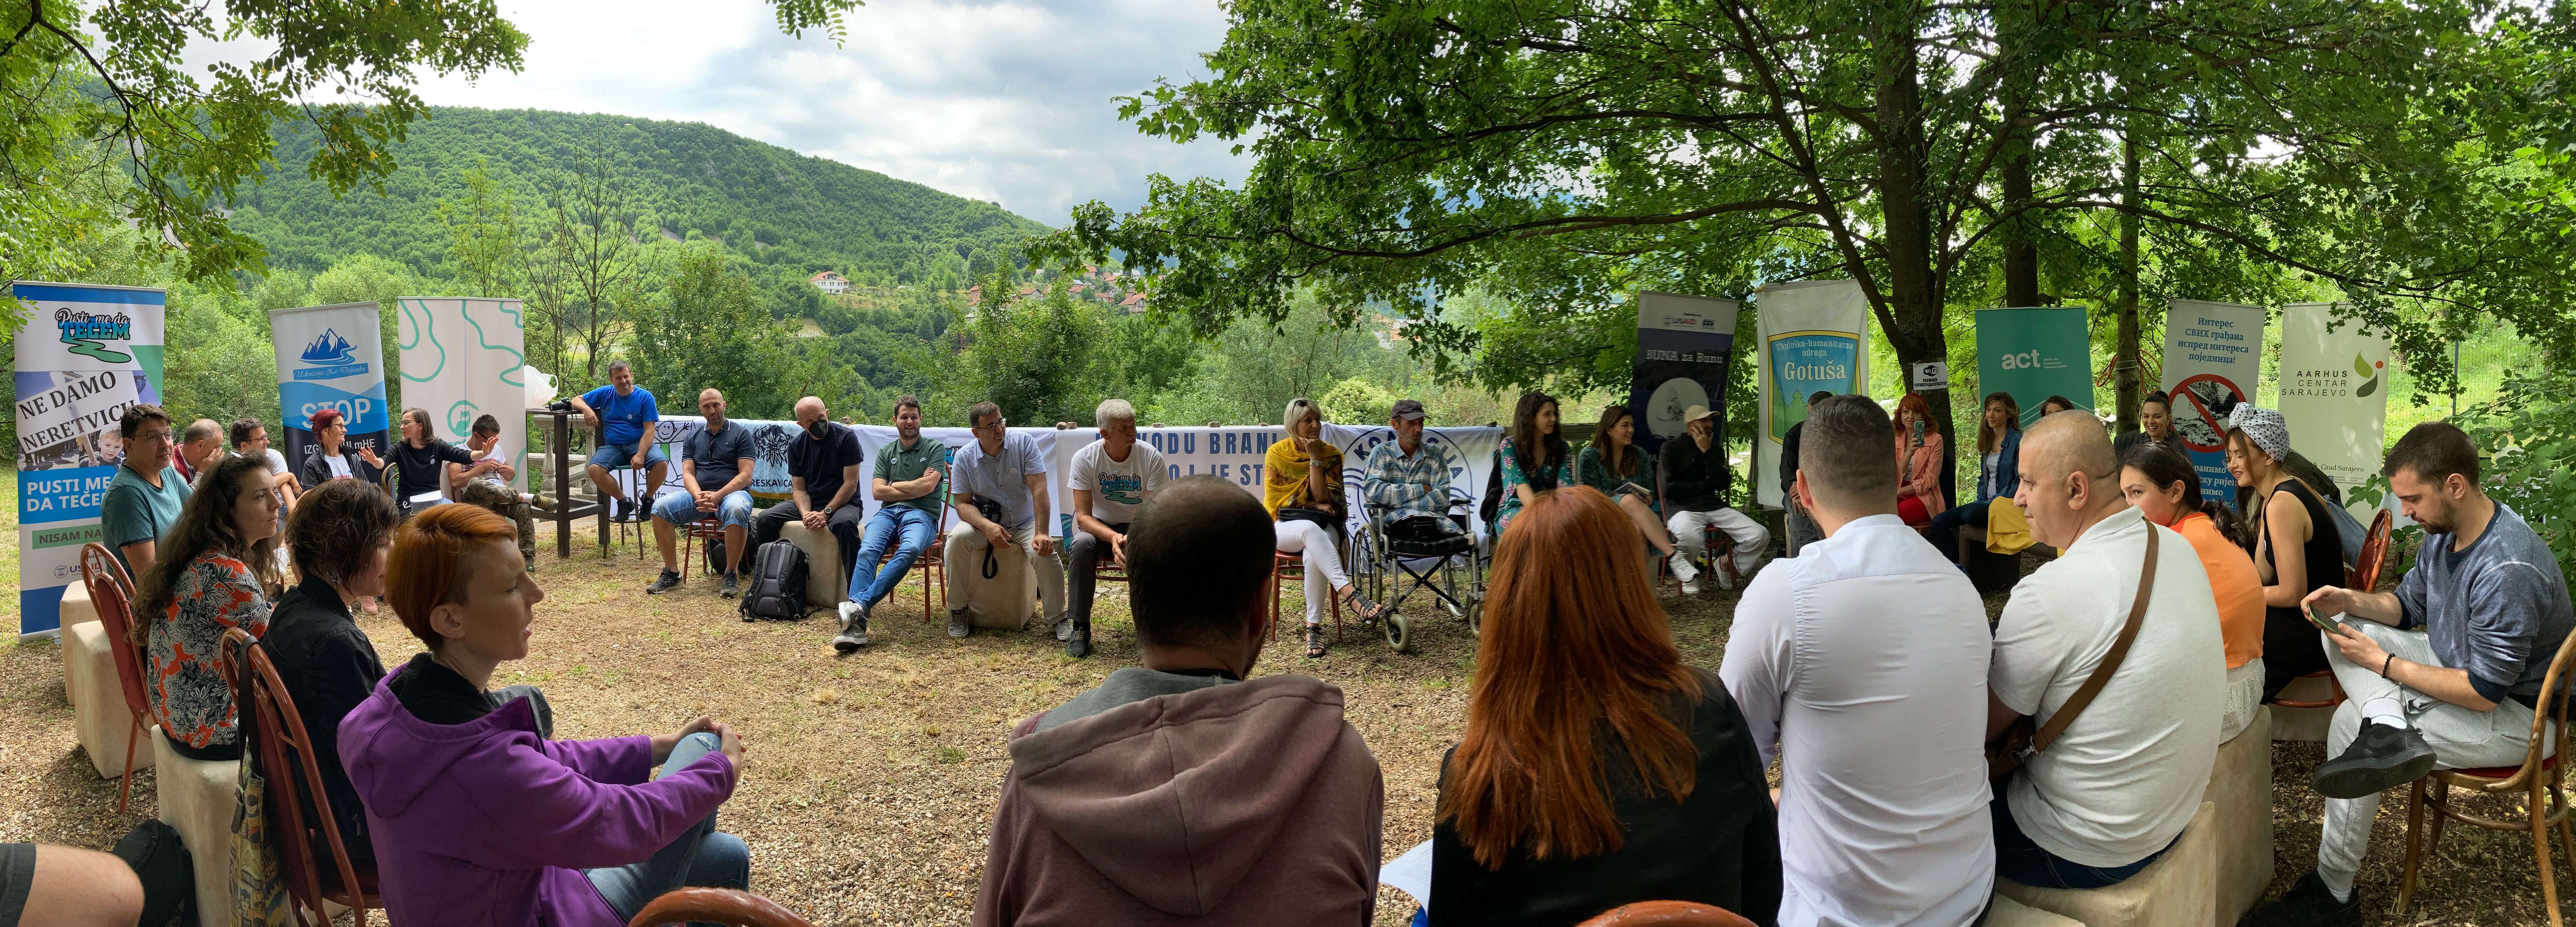 Am Samstag trafen sich AktivistInnen aus verschiedenen Balkanstaaten in Sarajewo, um eine neue Bewegung zu initiieren. Viele der Anwesenden kämpfen seit Jahren gegen den Bau von Wasserkraftwerken, etwa an der Neretvica (BIH) oder Stara Planina (Serbien), im Kosovo oder in Montenegro. © Ulrich Eichelmann